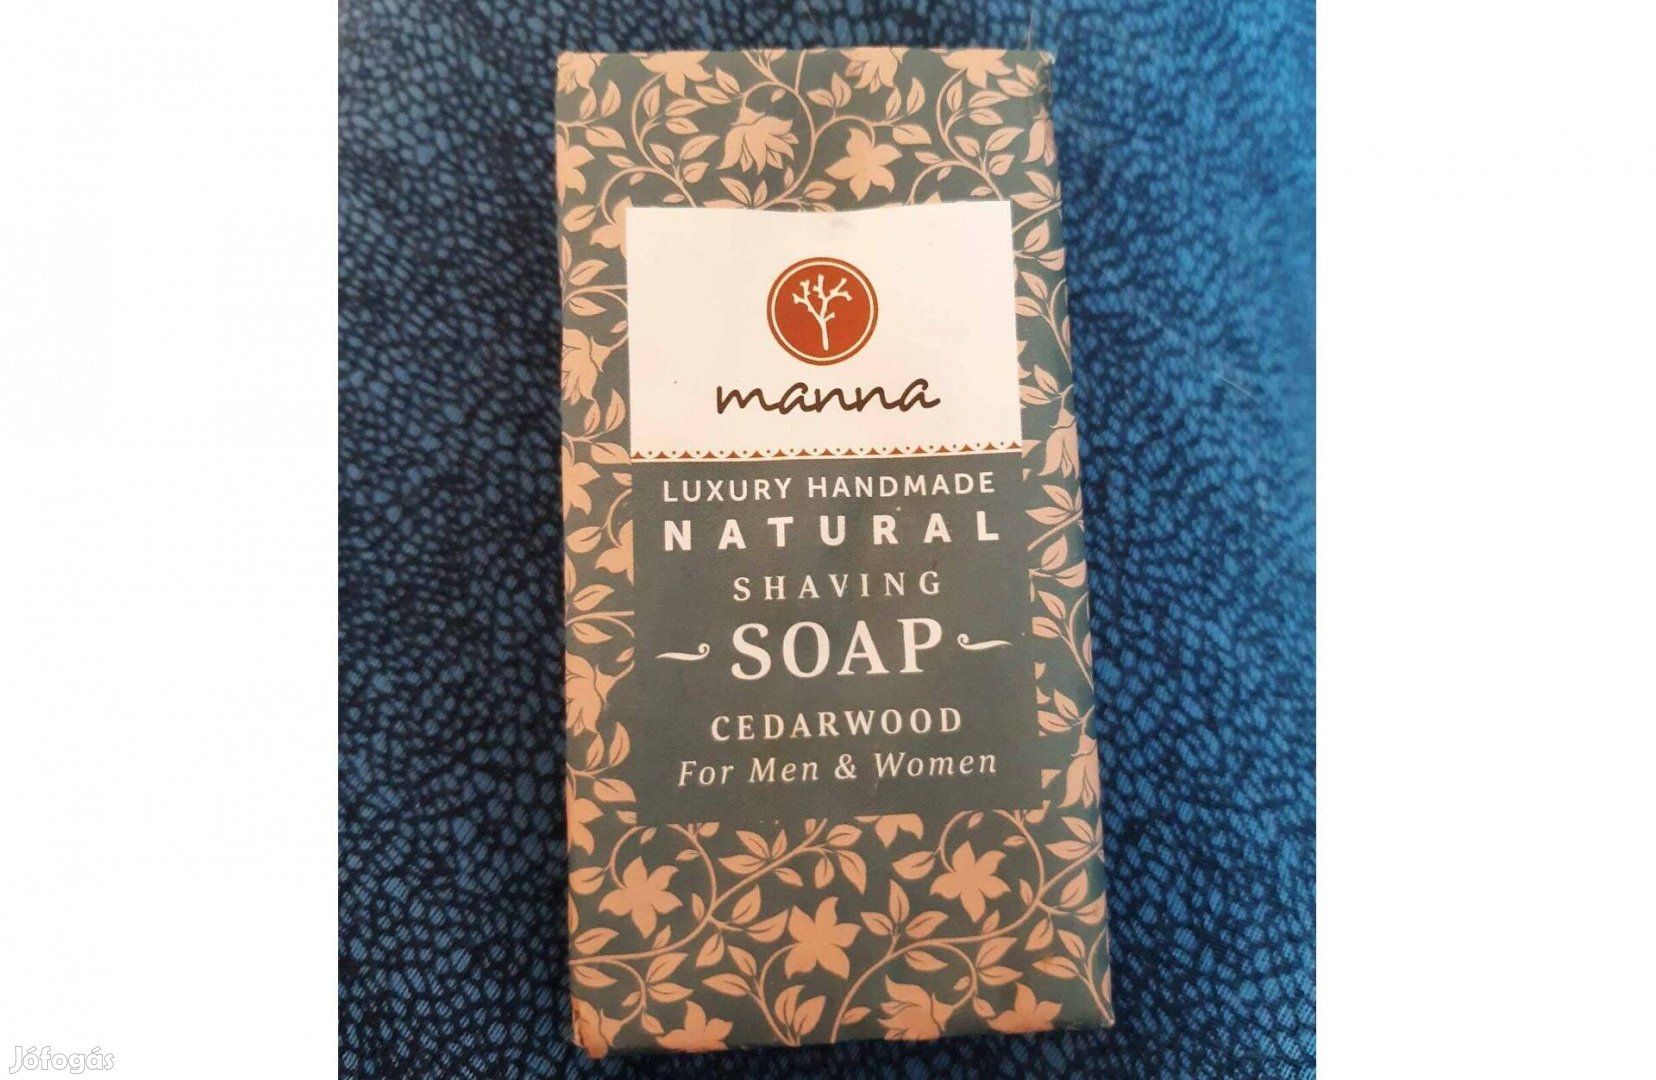 Új Manna Luxory Handmade shaving soap - luxus borotválkozó szappan